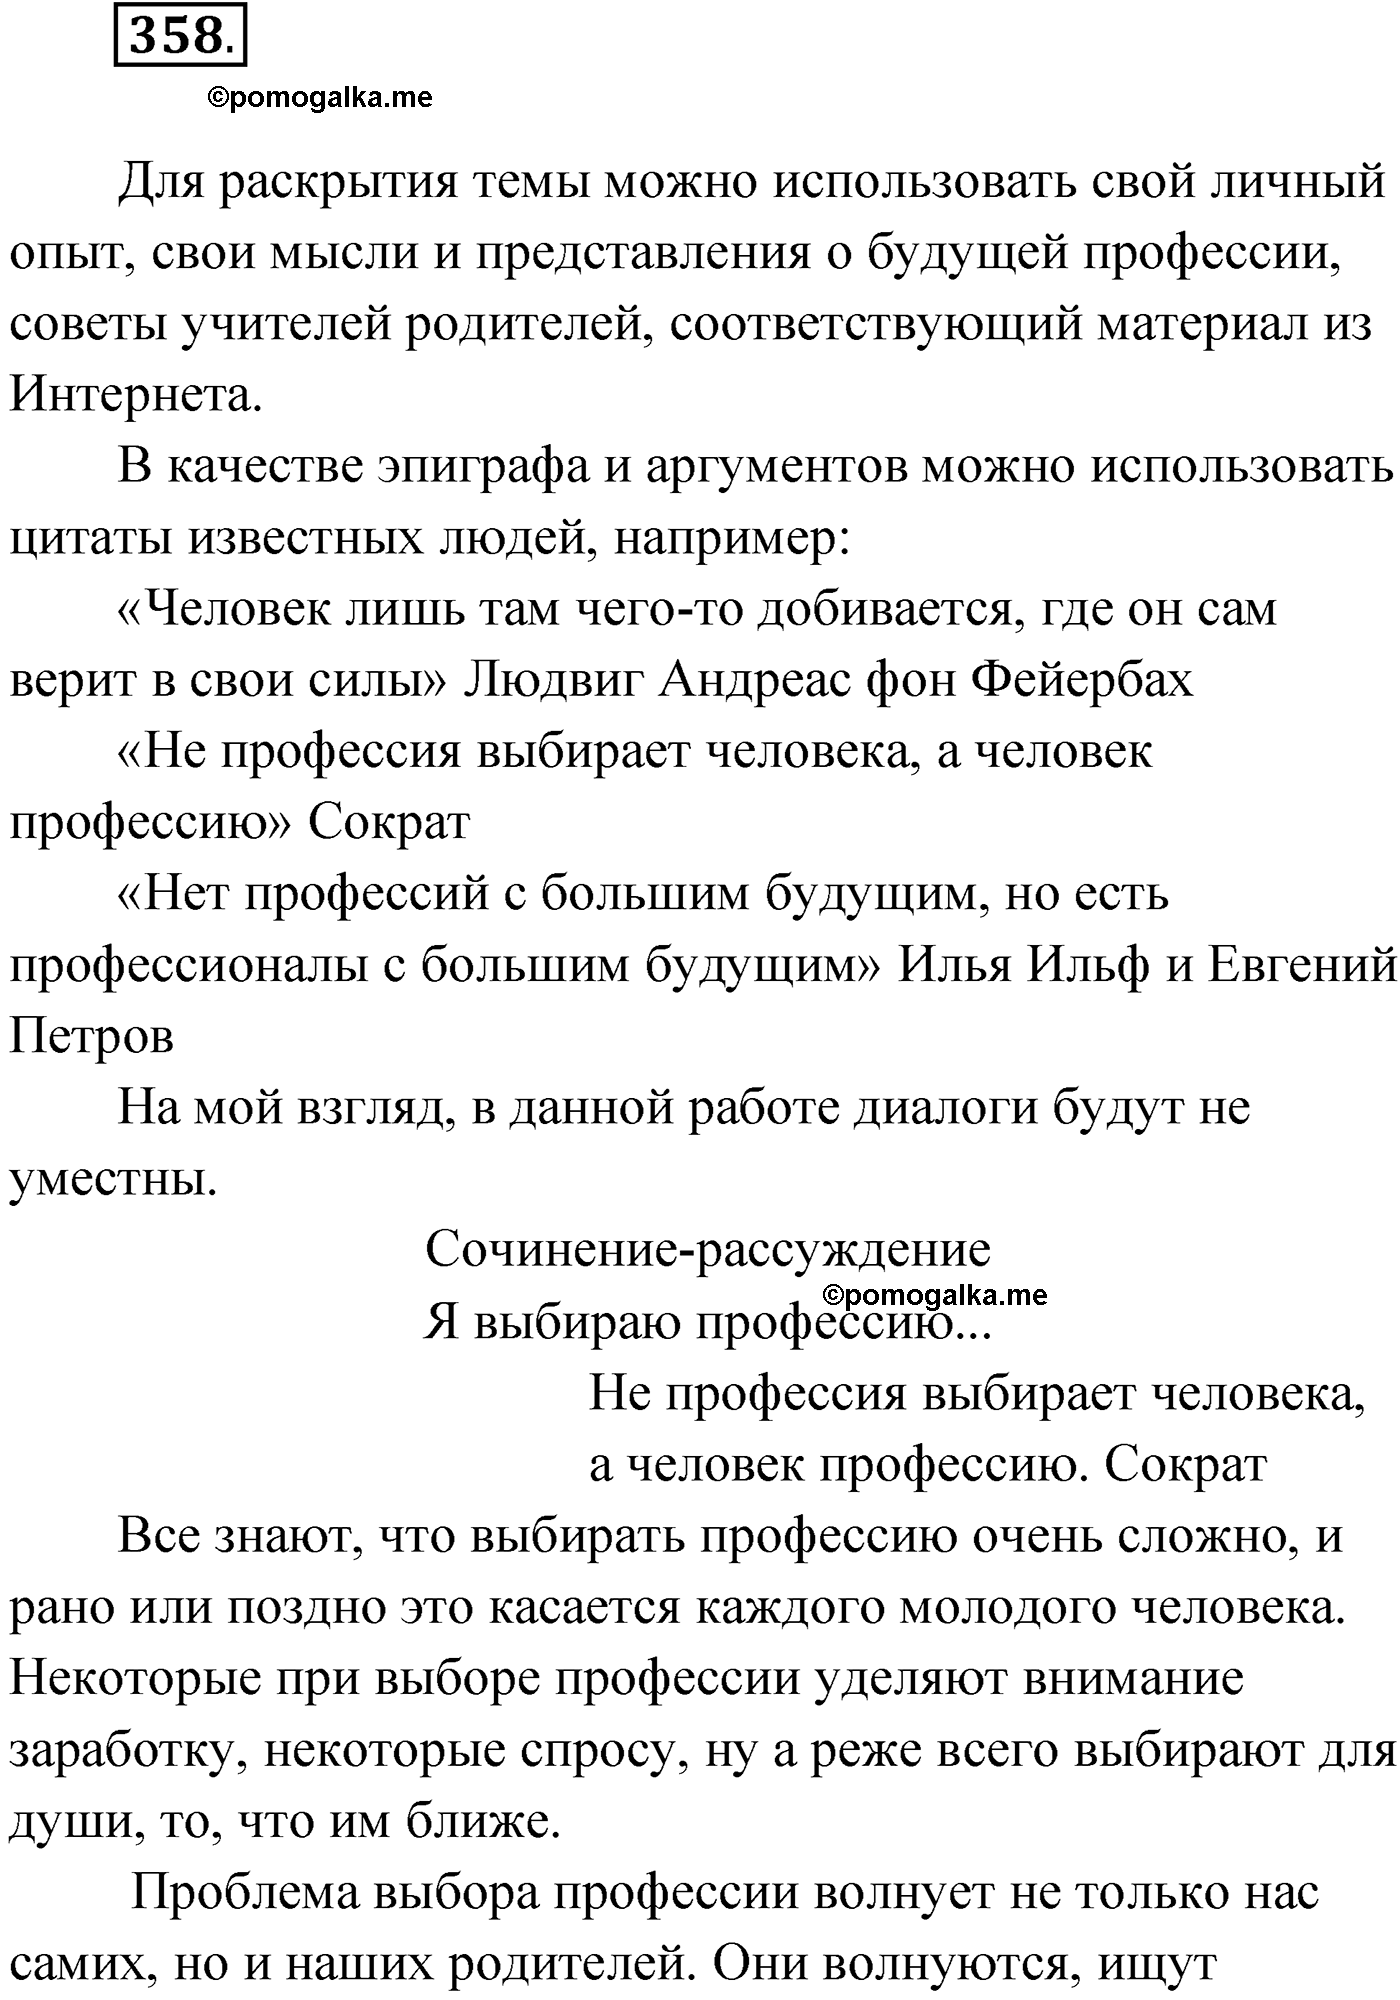 упражнение №358 русский язык 9 класс Мурина 2019 год